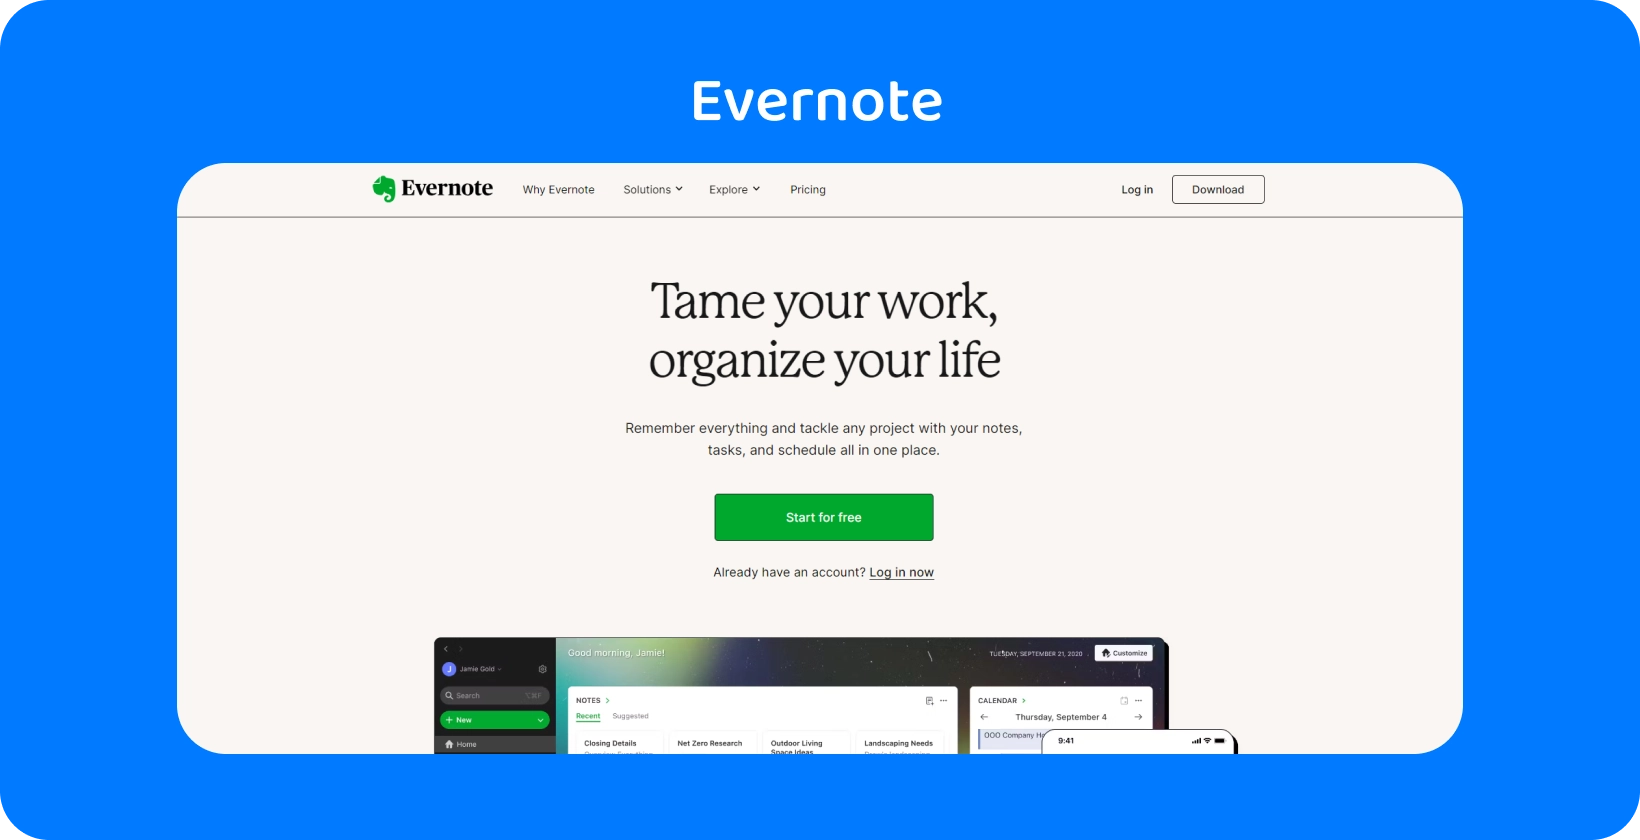 Evernote startpagina met organisatiefuncties, vergelijkbaar met de transcriptie van vergaderingen van onze app voor advocaten.